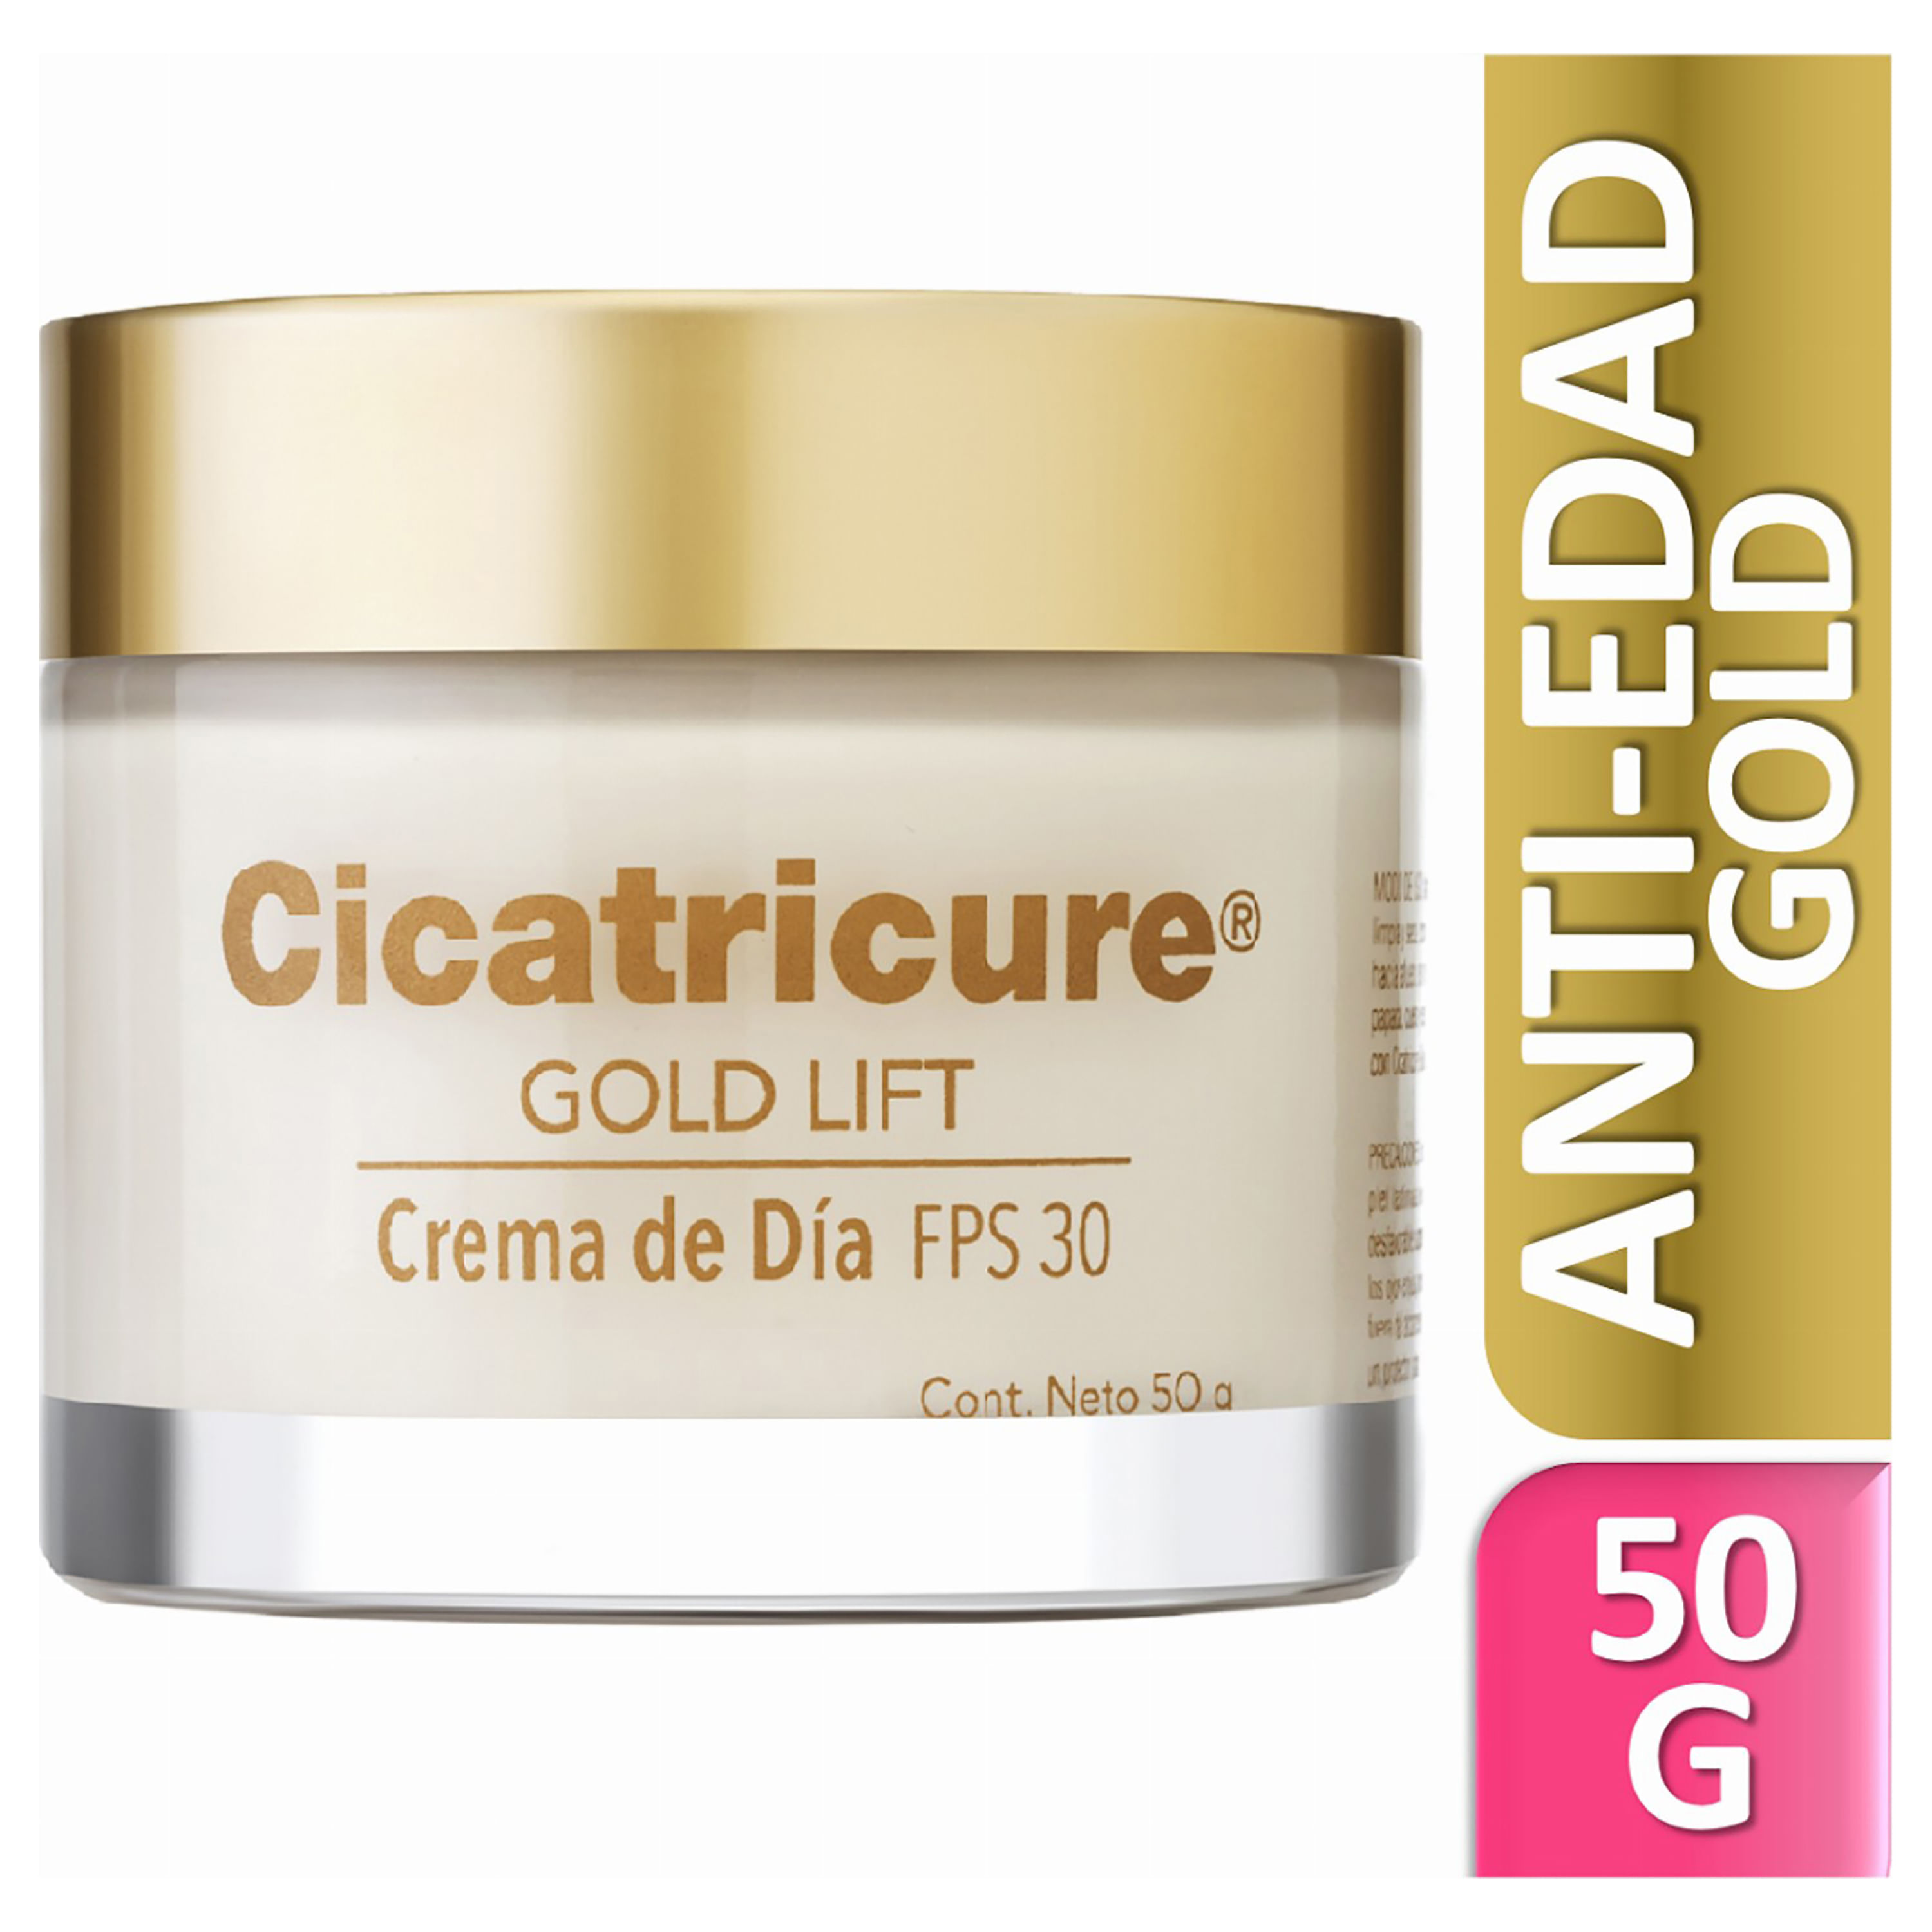 Crema-Facial-Gold-Lift-D-a-Cicatricure-1-4463